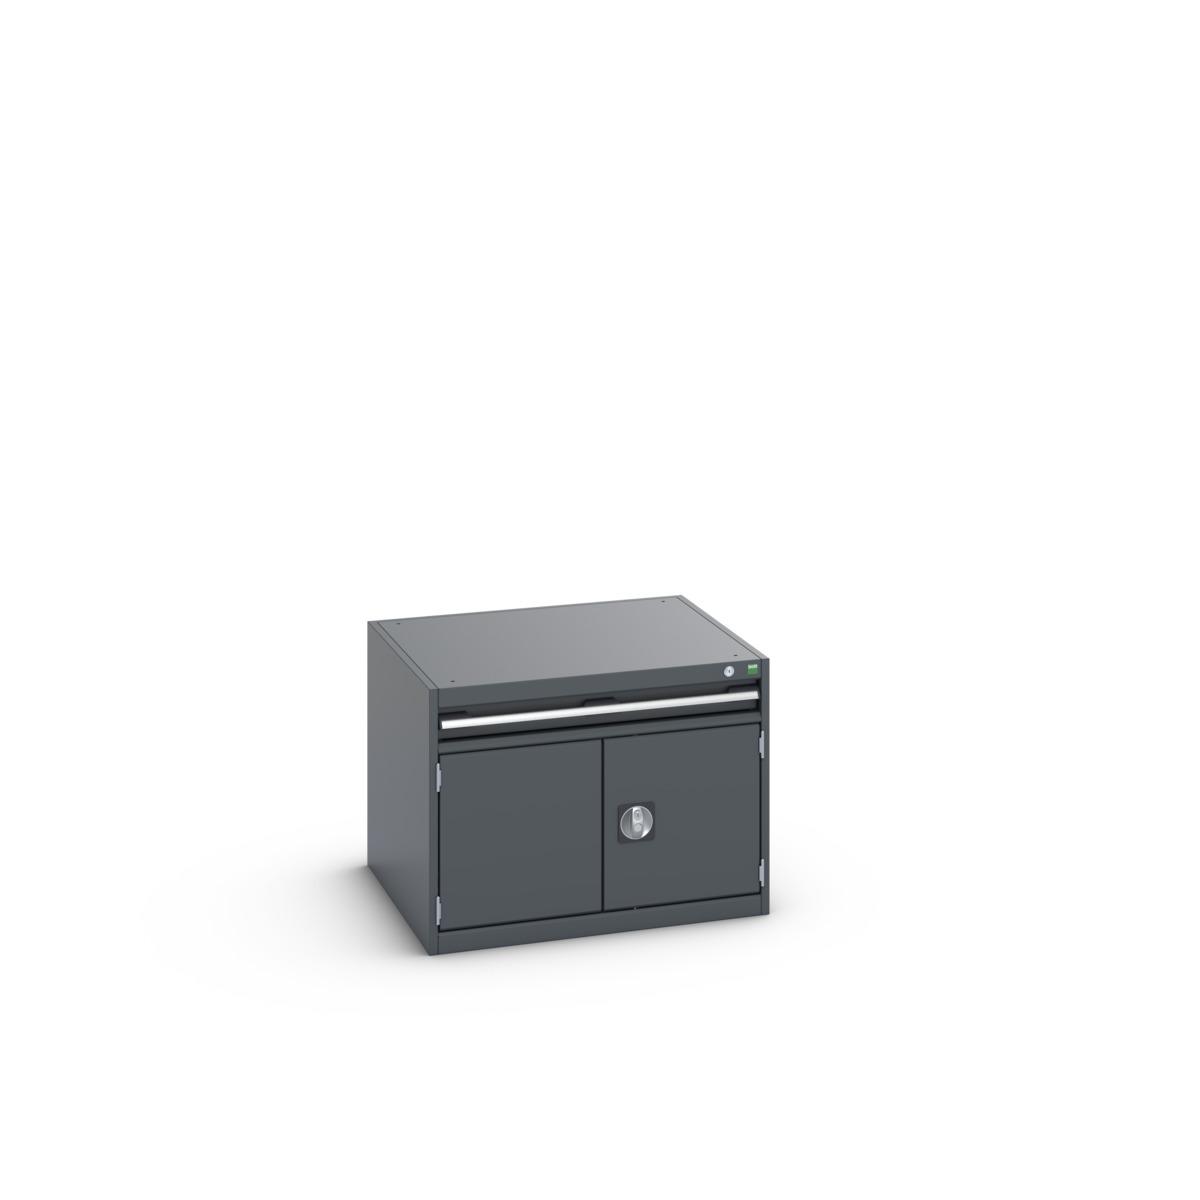 40028089.77V - cubio drawer-door cabinet